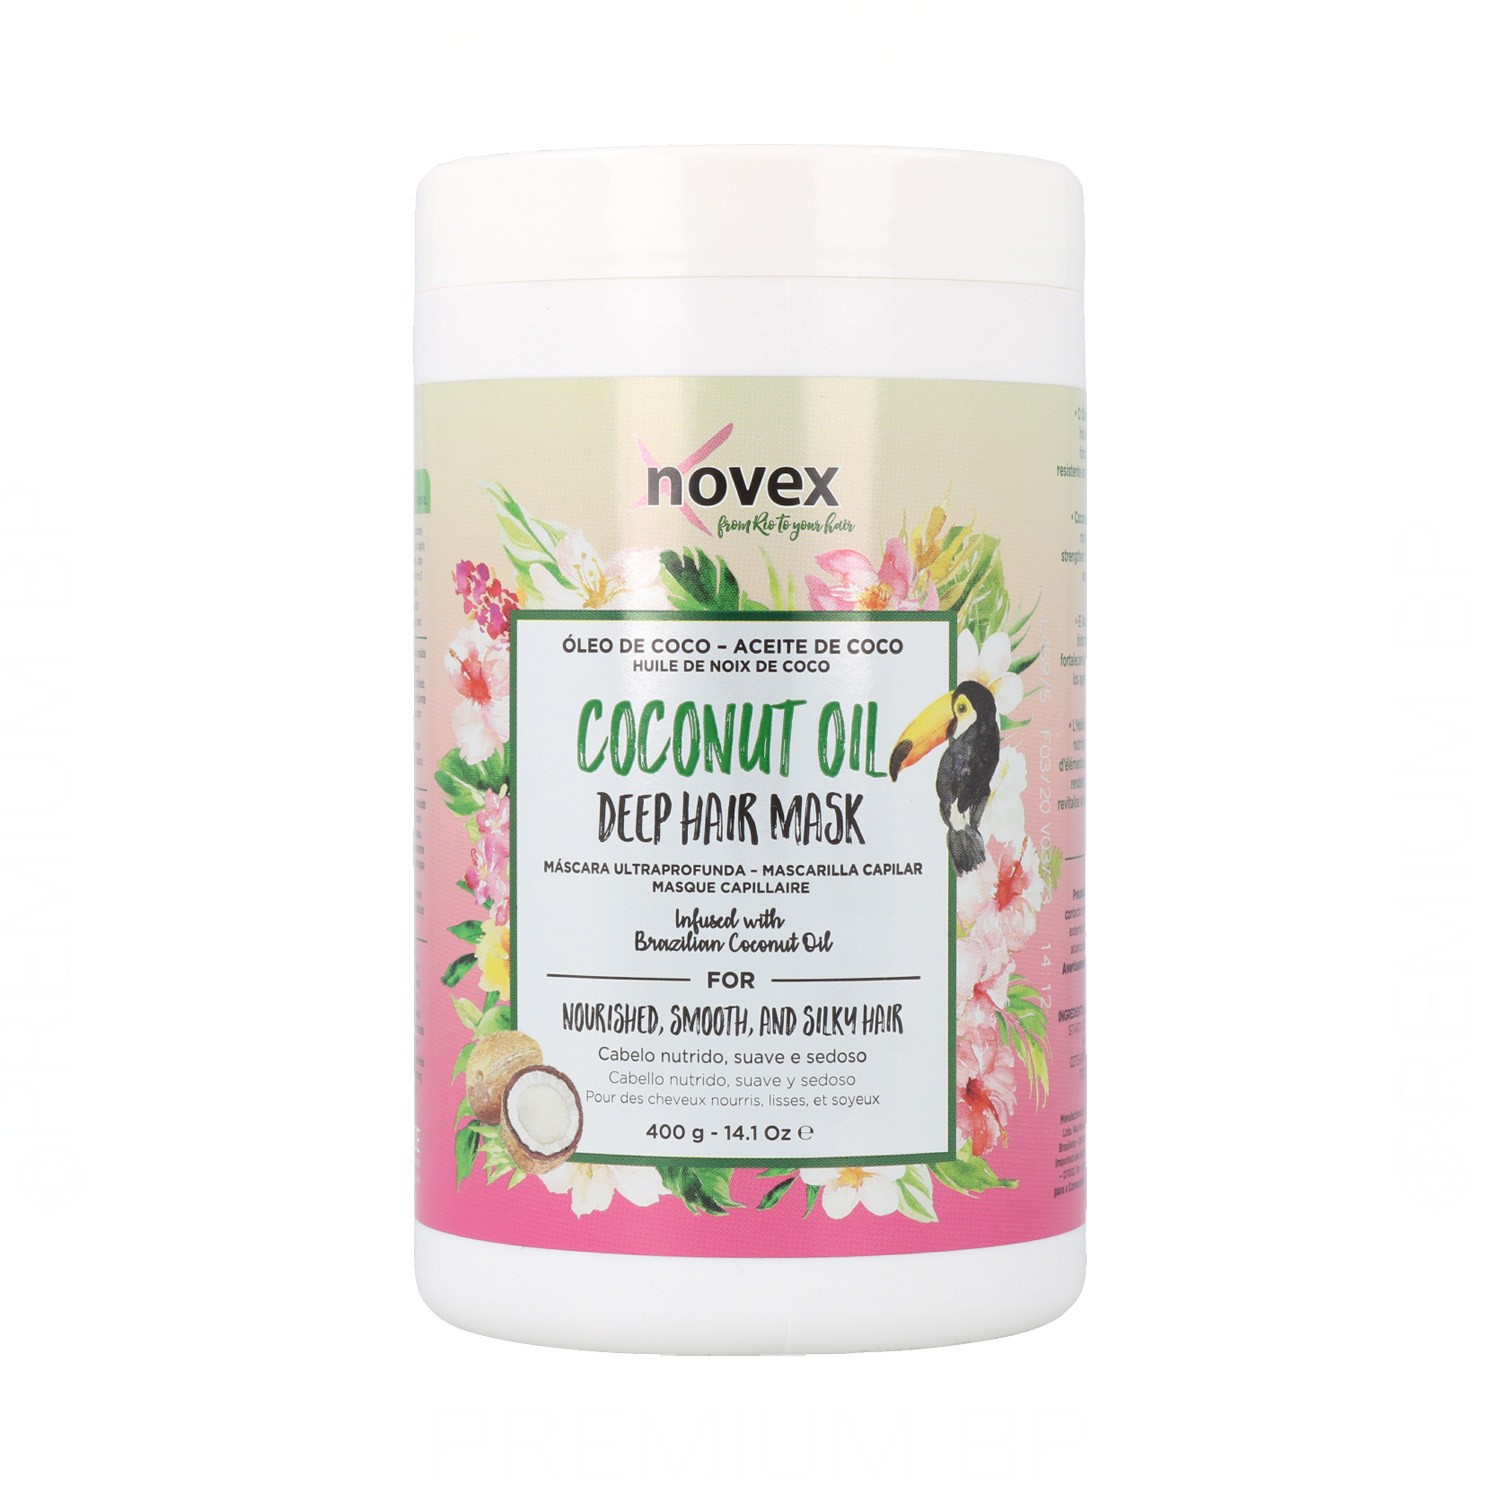 Novex - Novex coconut oil mascarilla capilar 400 ml, mascarilla reparadora. Belleza y cuidado de tu cabello y tu piel con Novex.